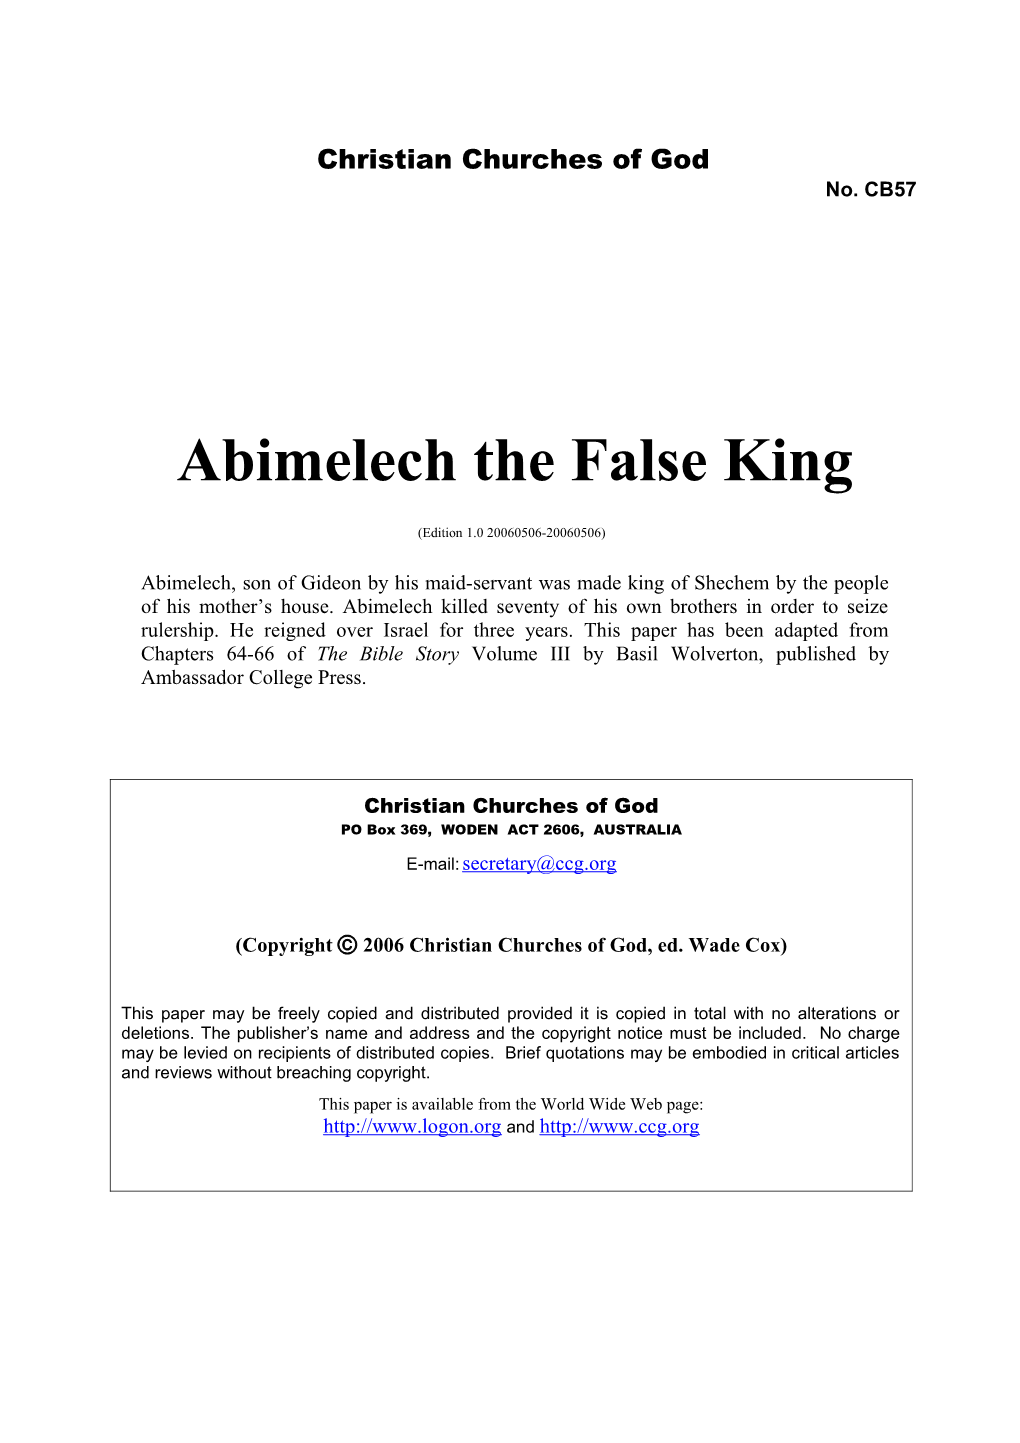 Abimelech the False King (No. CB57)